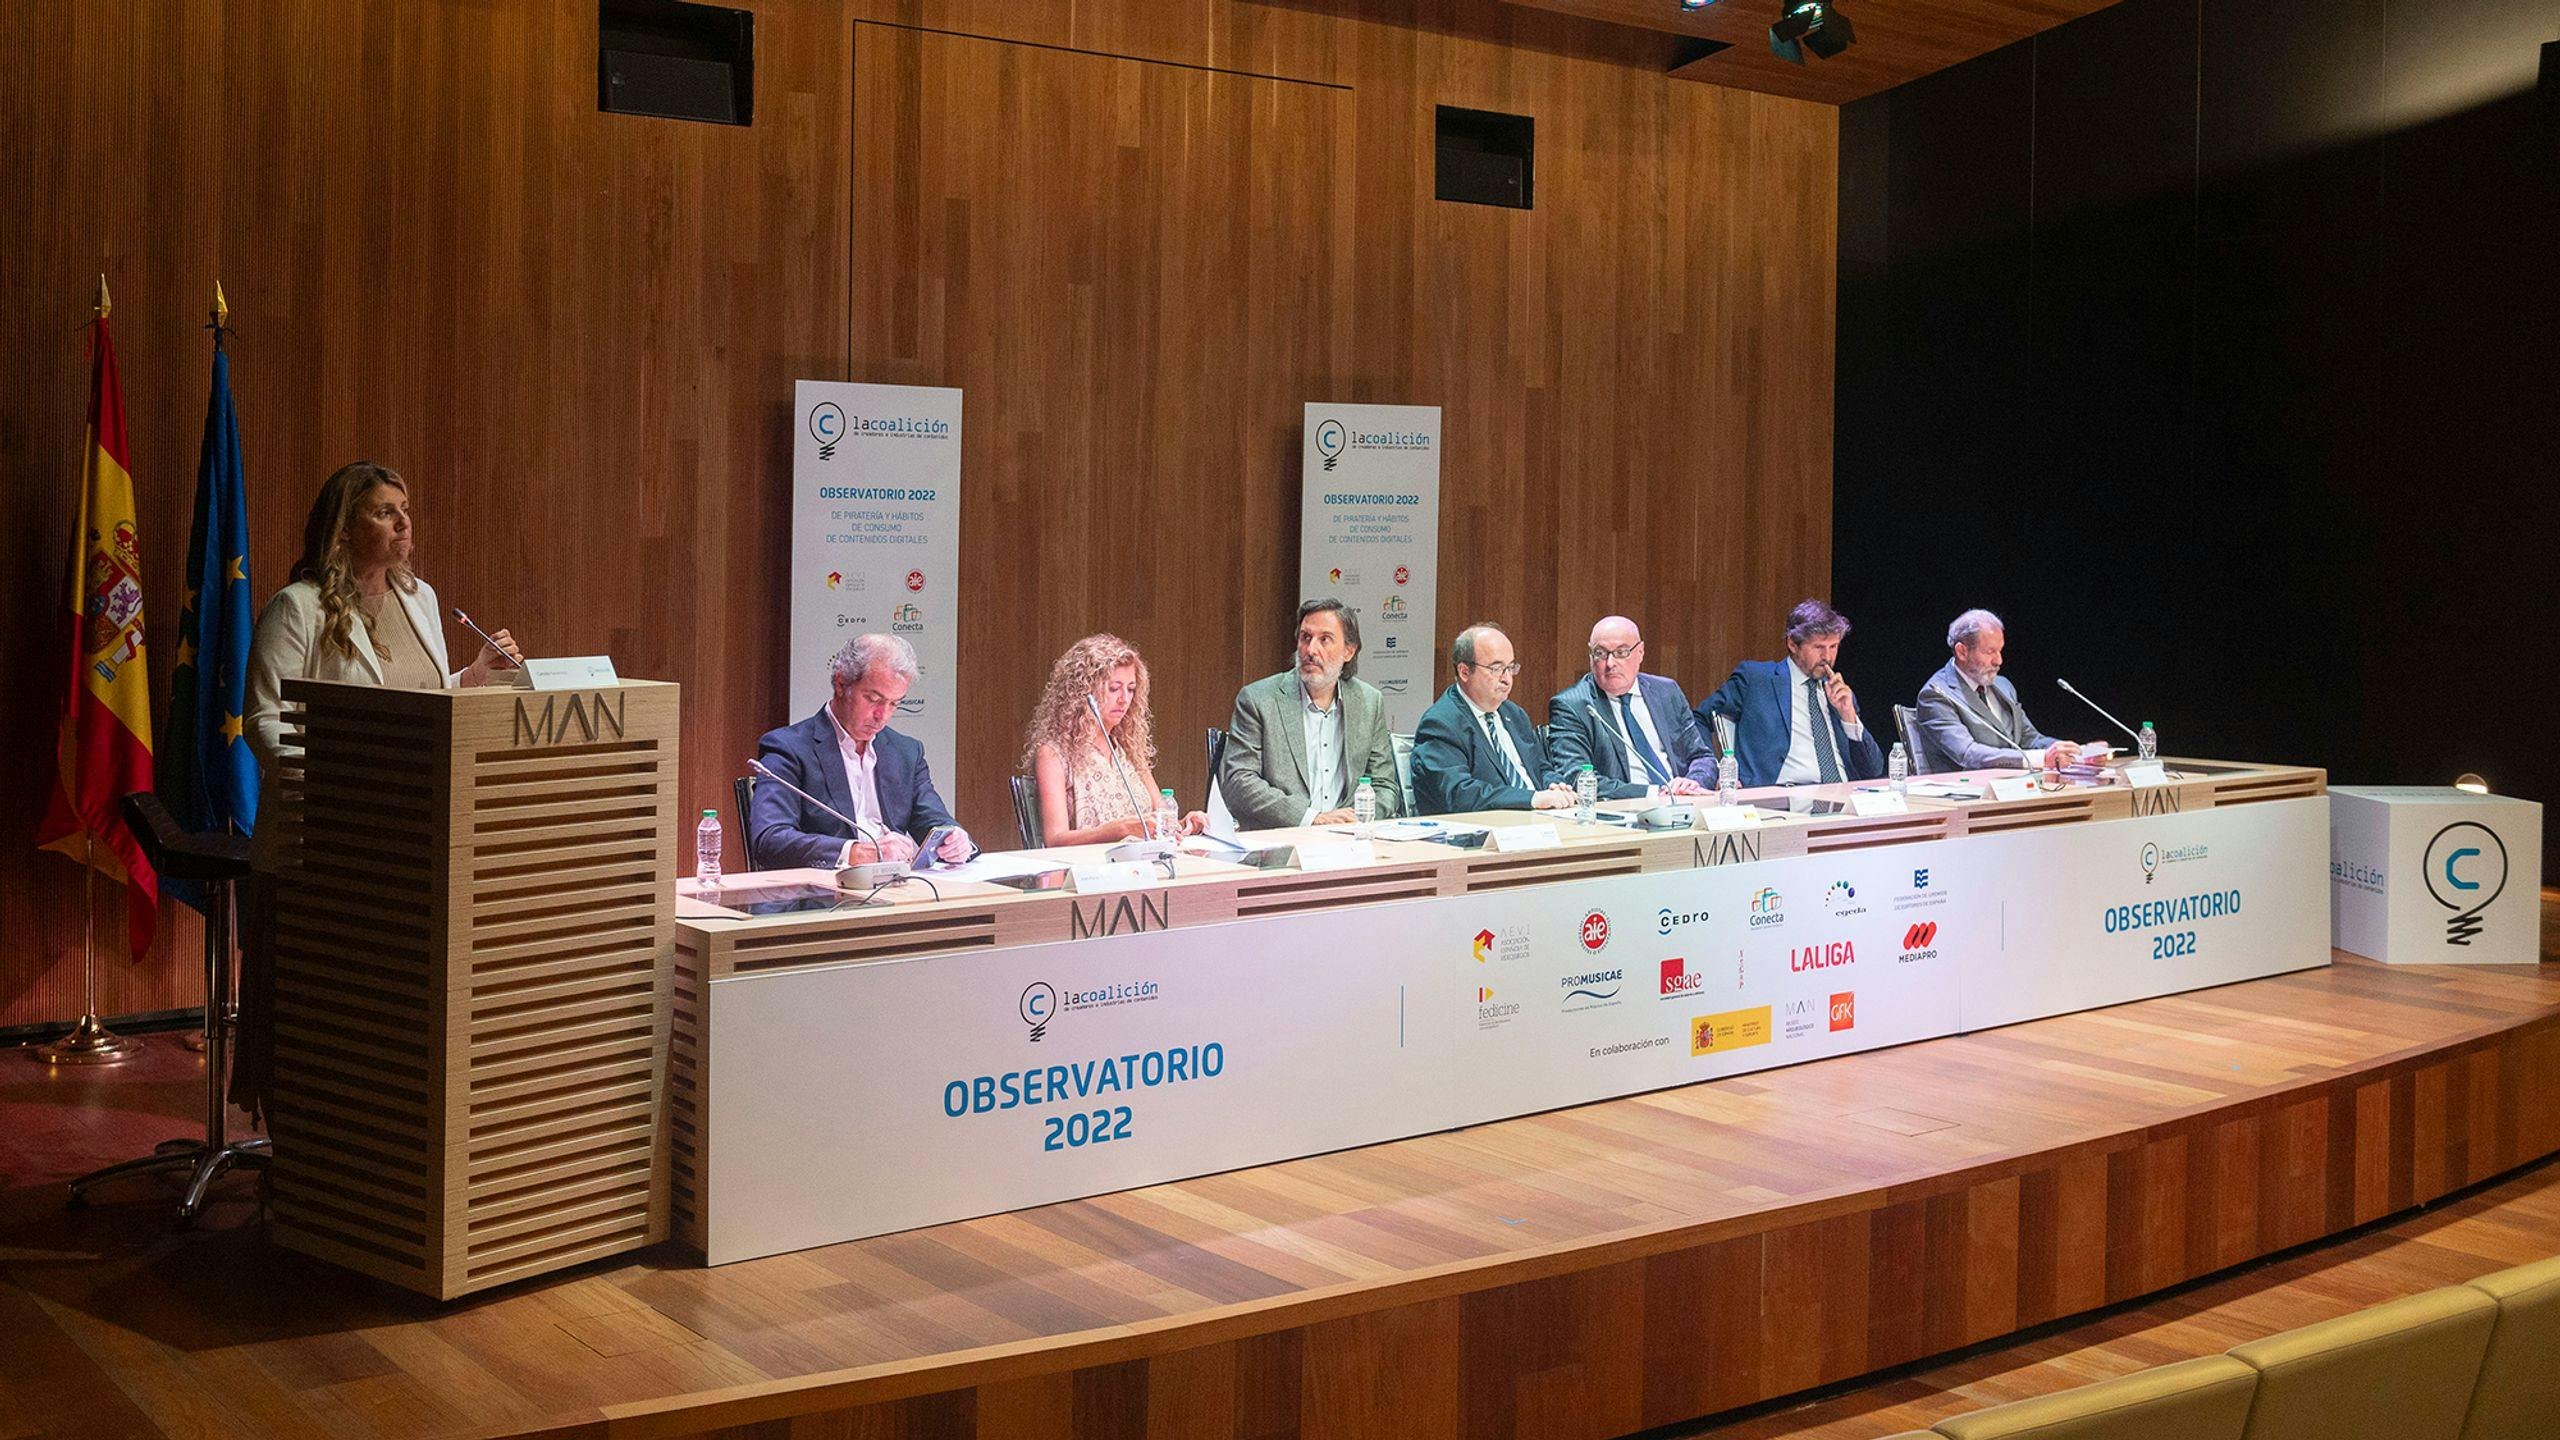 El Ministro de Cultura y Deporte, Miquel Iceta, estuvo presente en la presentación del Observatorio 2022 de la piratería y hábitos de consumo de contenidos digitales